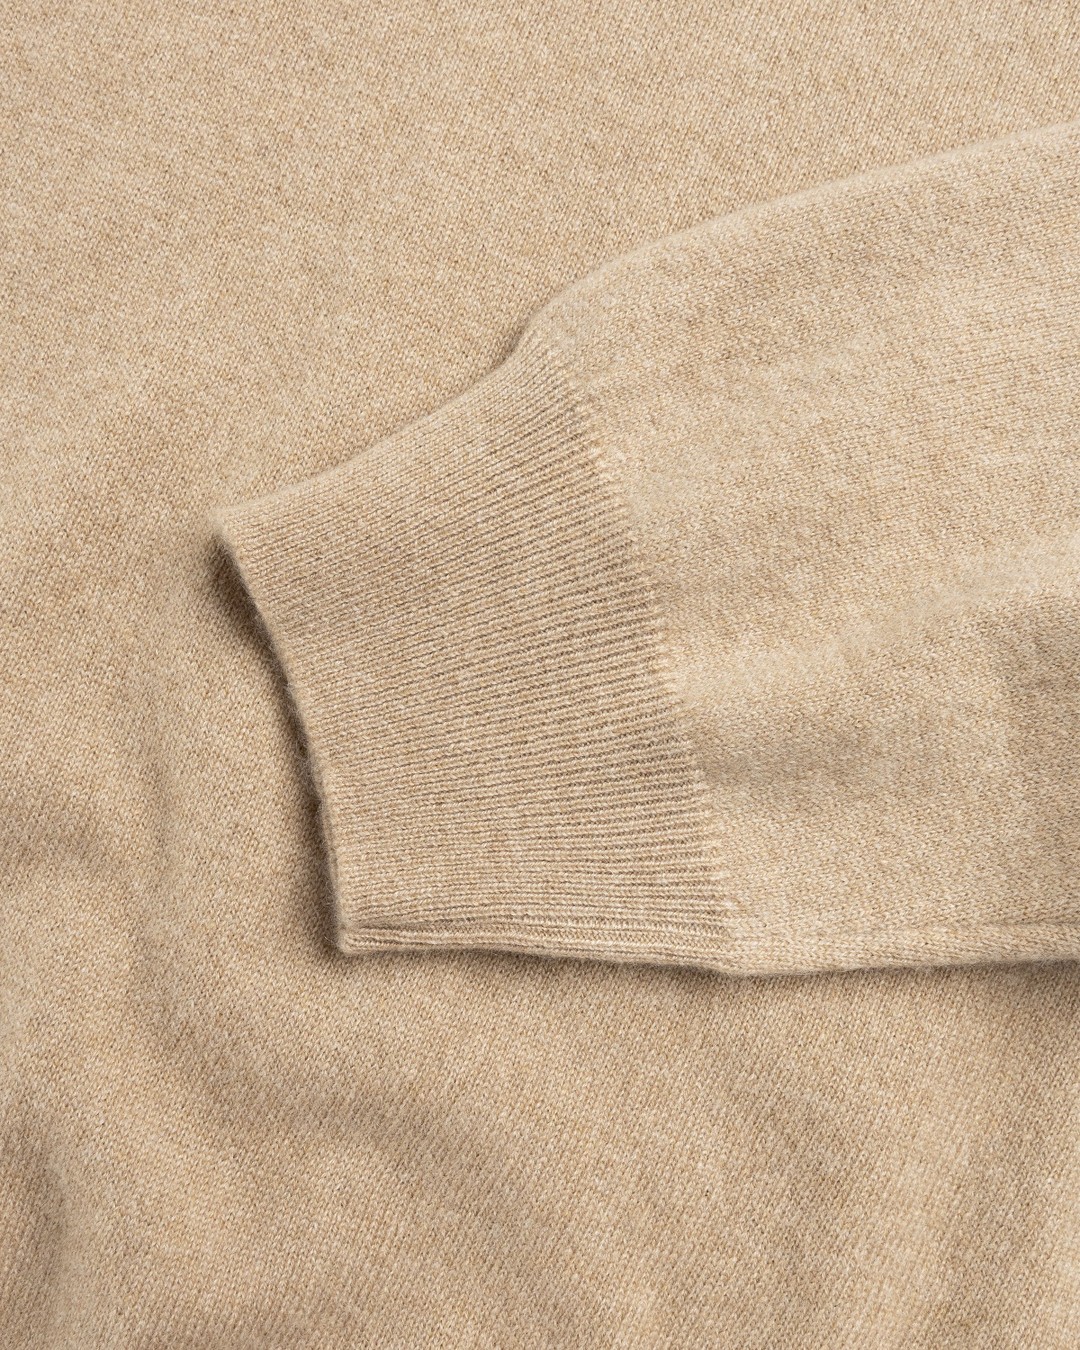 Highsnobiety HS05 – Cashmere Crew Sweater Beige - Knitwear - Beige - Image 7